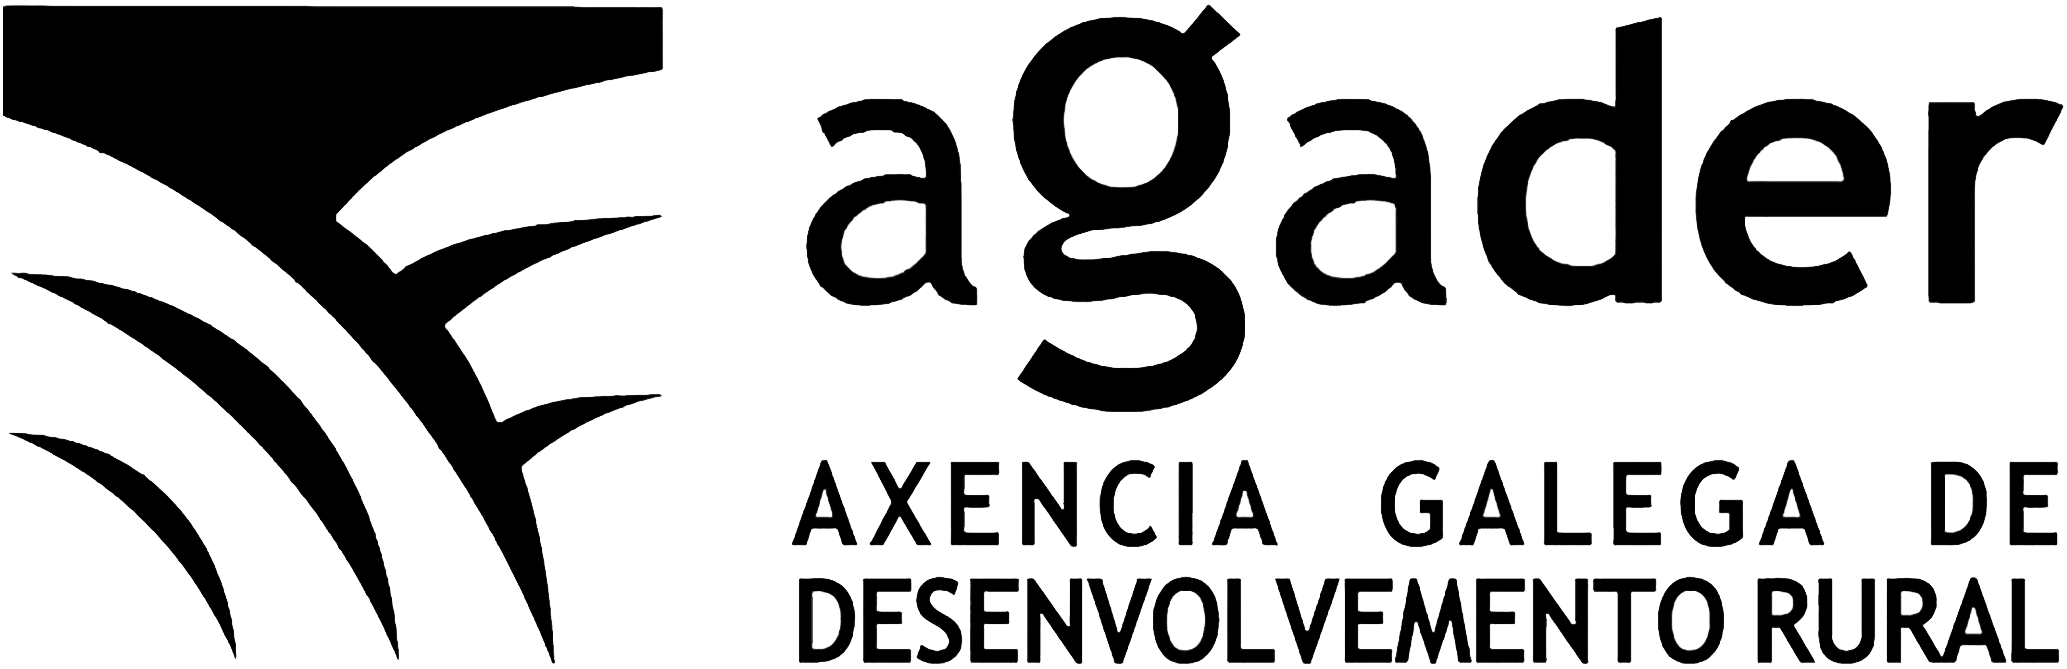 5.	Axencia Galega de Desenvolvemento Rural (AGADER)